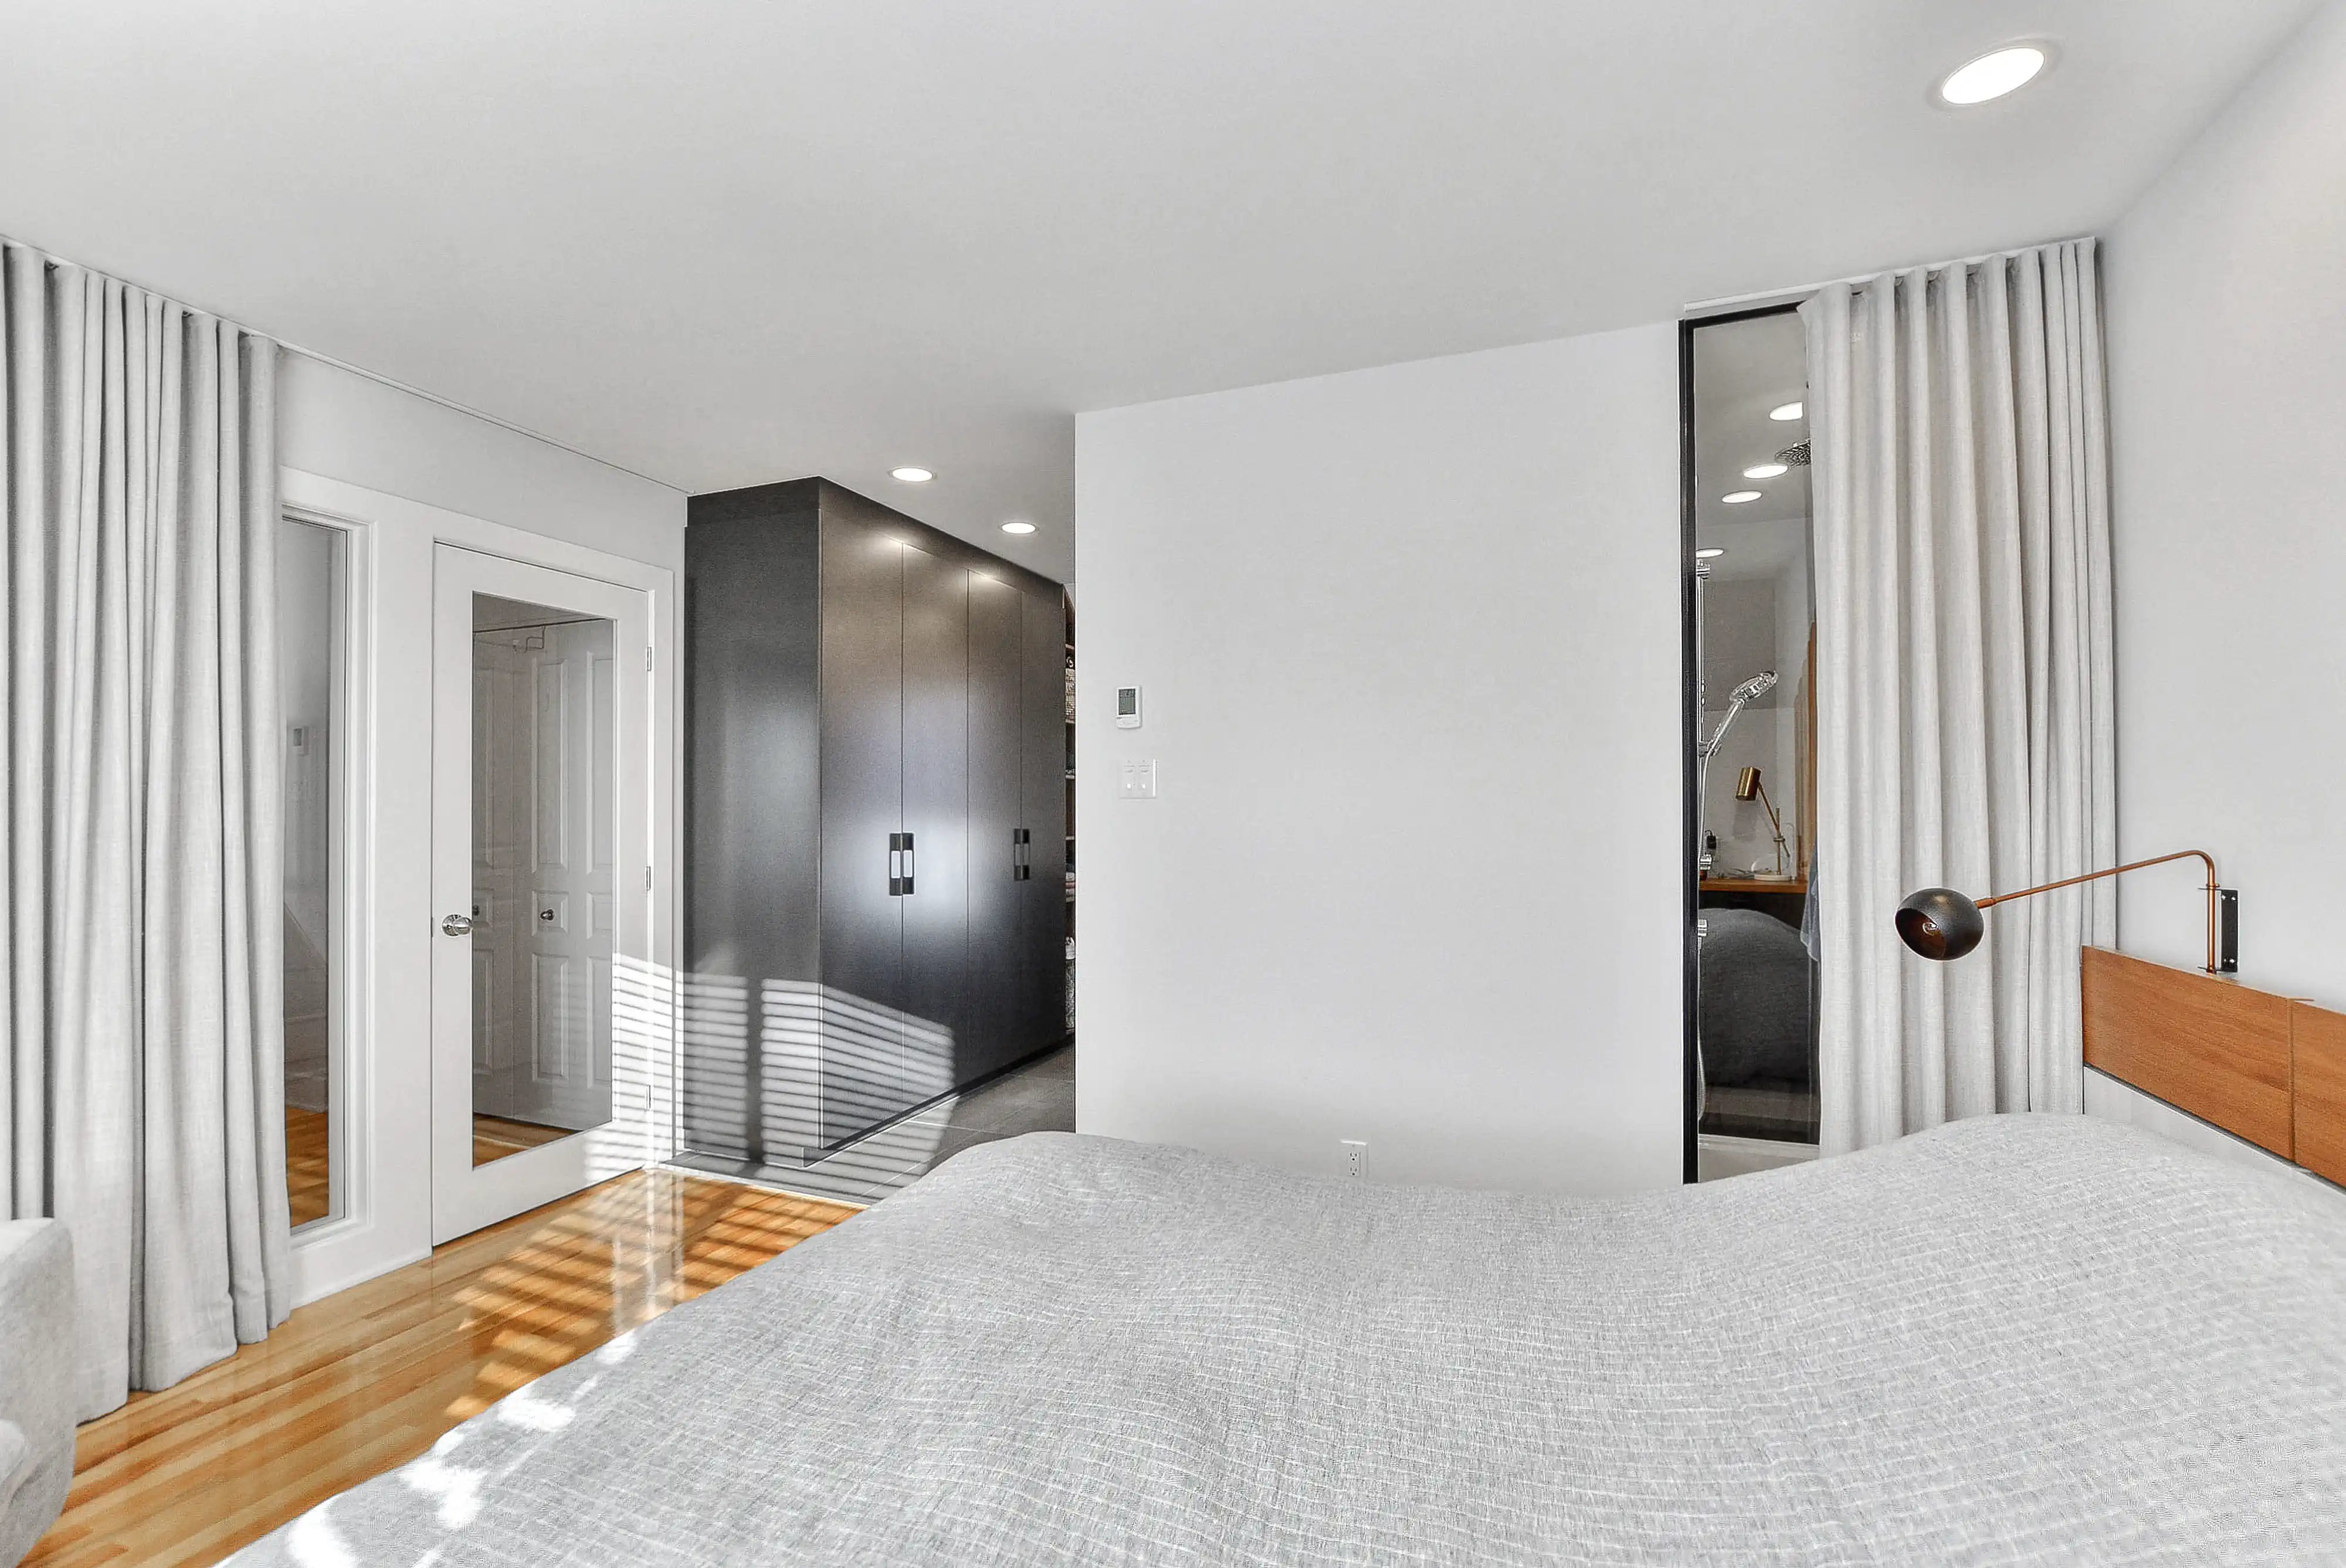 Chambre moderne avec un grand lit, un sol en bois dur et une porte menant à une salle de bain, intérieur signé Sarah Brown Design